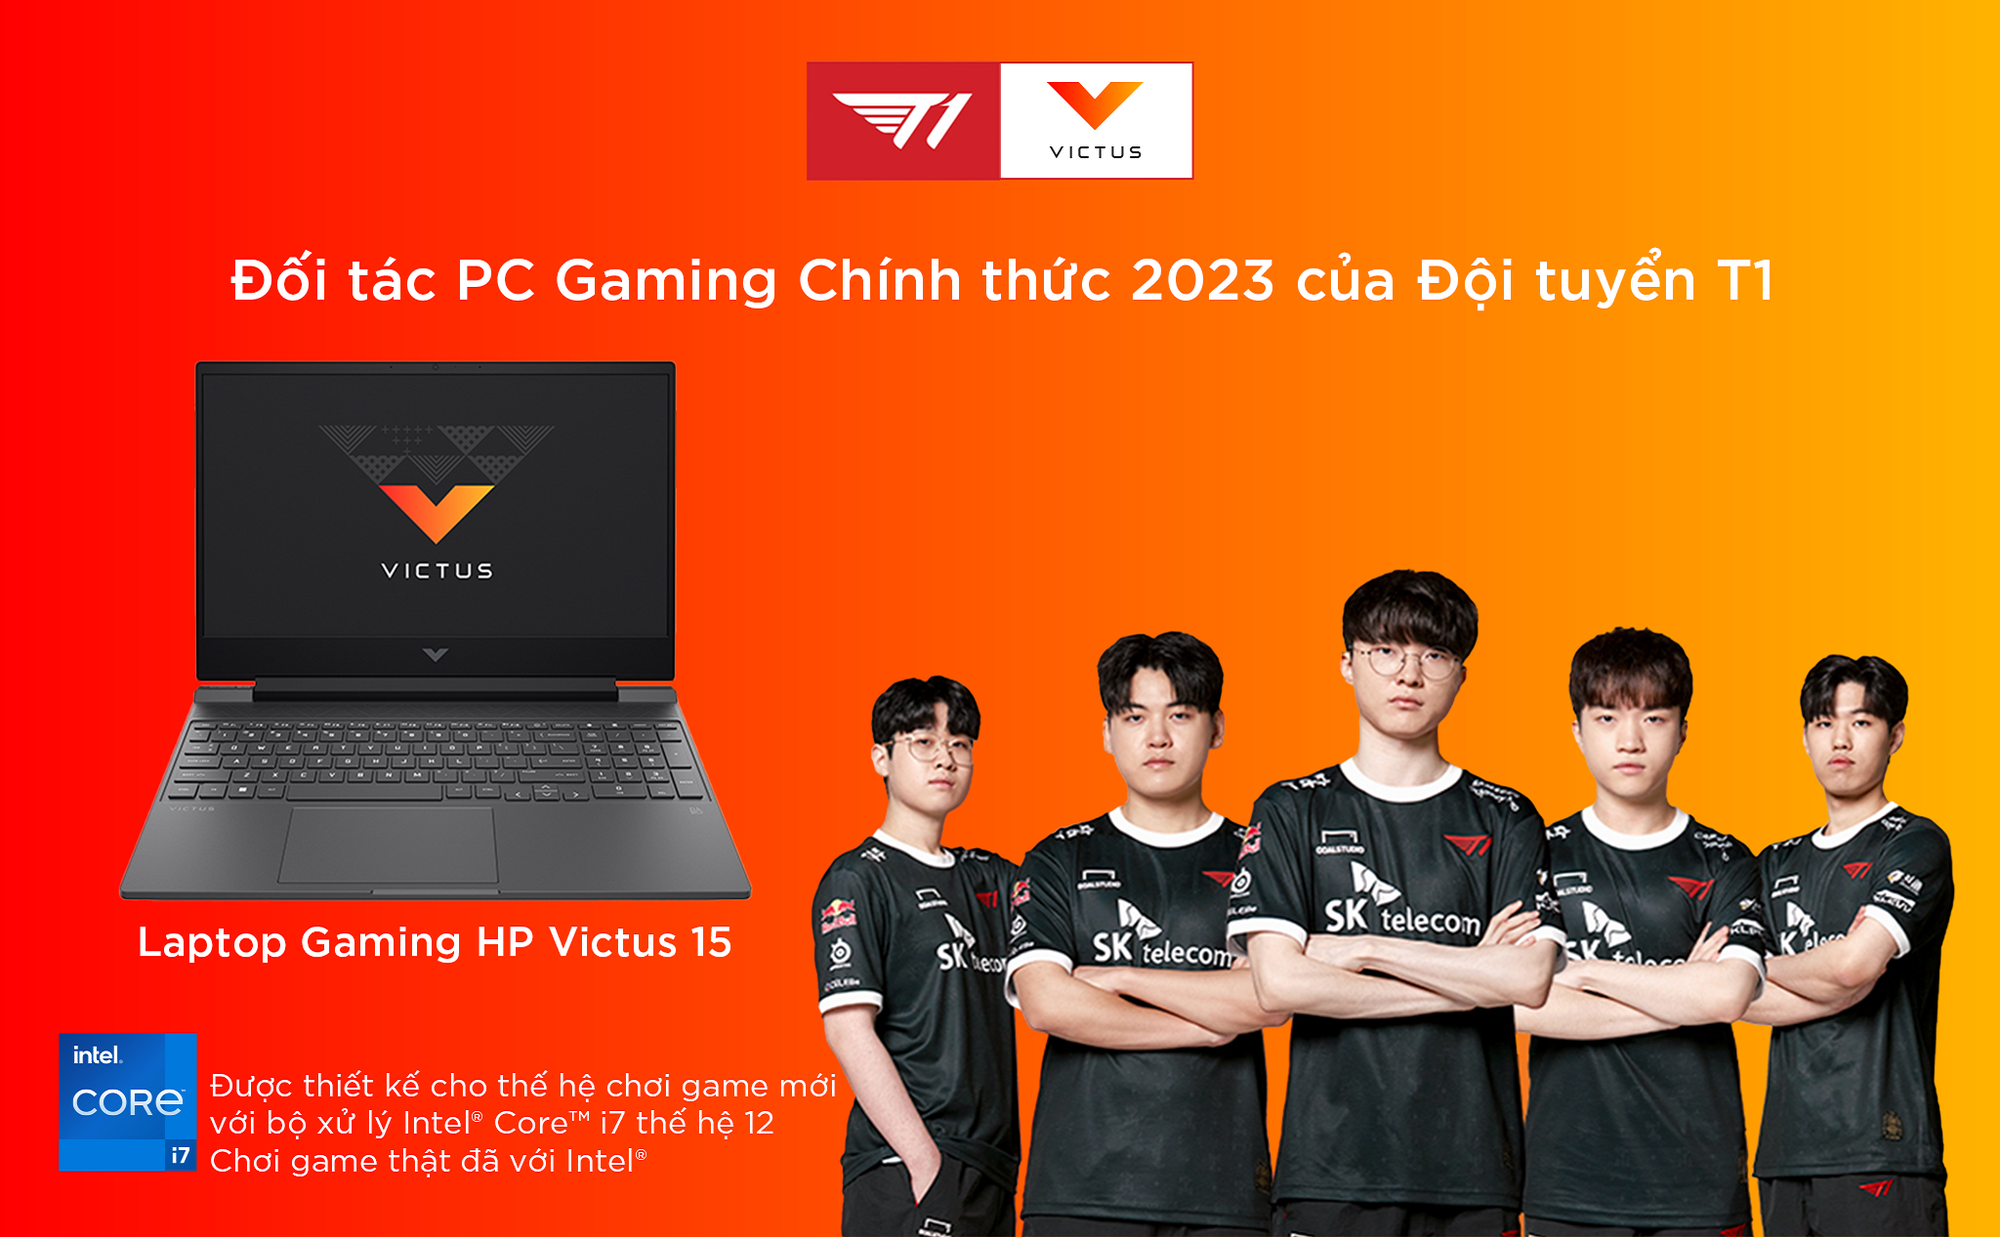 HP Victus là đối tác PC gaming chính thức 2023 của đội tuyển T1   - Ảnh 1.